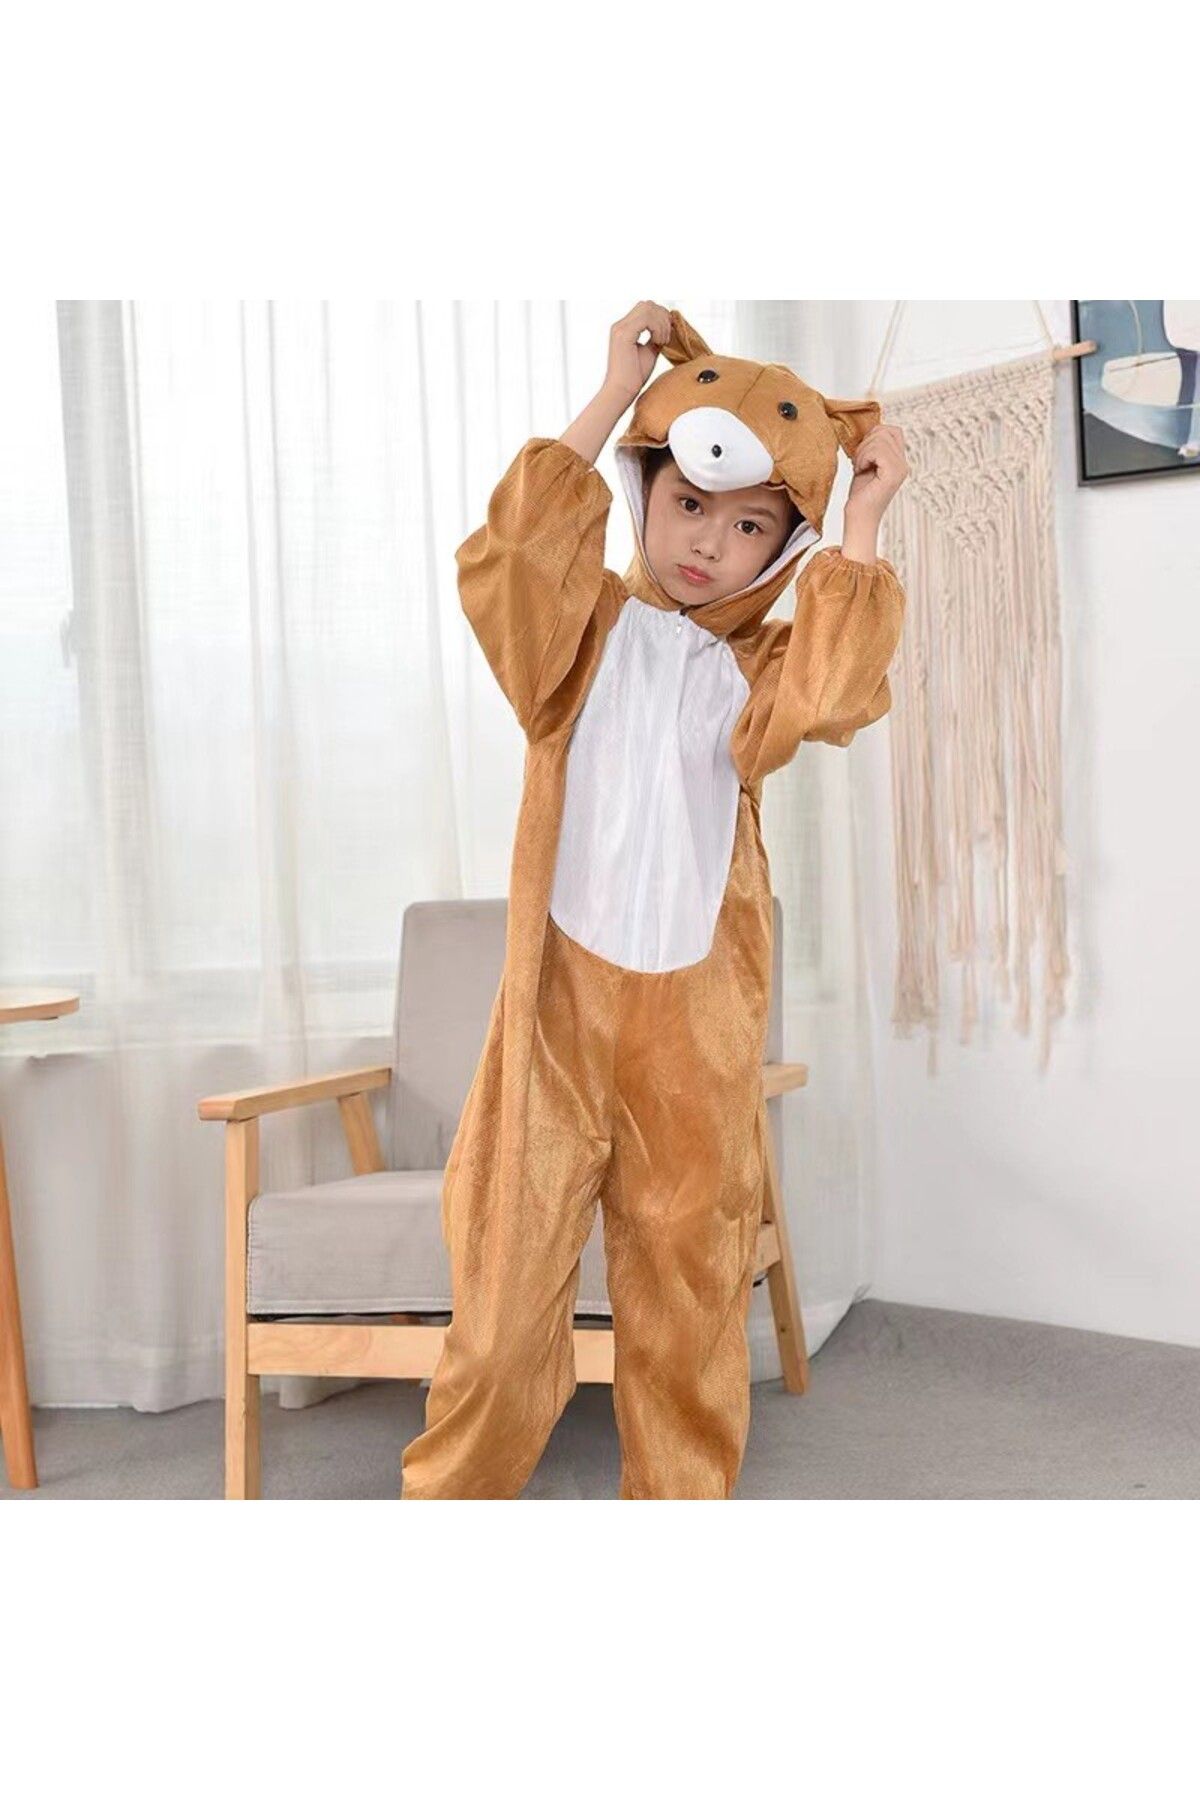 ZS DEMİR Çocuk Ayı Kostümü - Maymun Kostümü 4-5 Yaş 100 cm